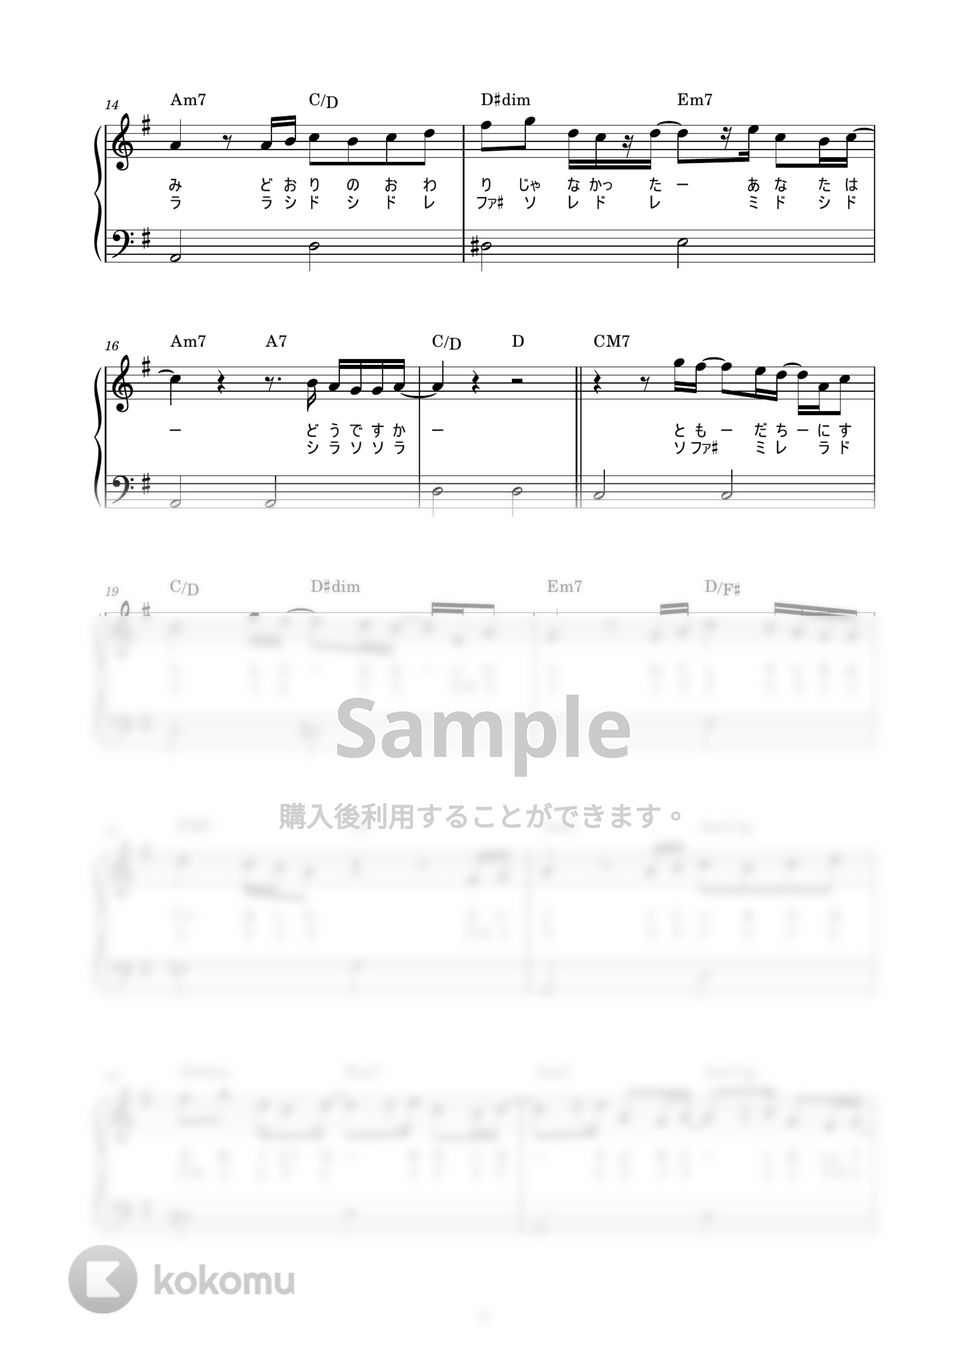 米津玄師 - Pale Blue (かんたん / 歌詞付き / ドレミ付き / 初心者) by piano.tokyo